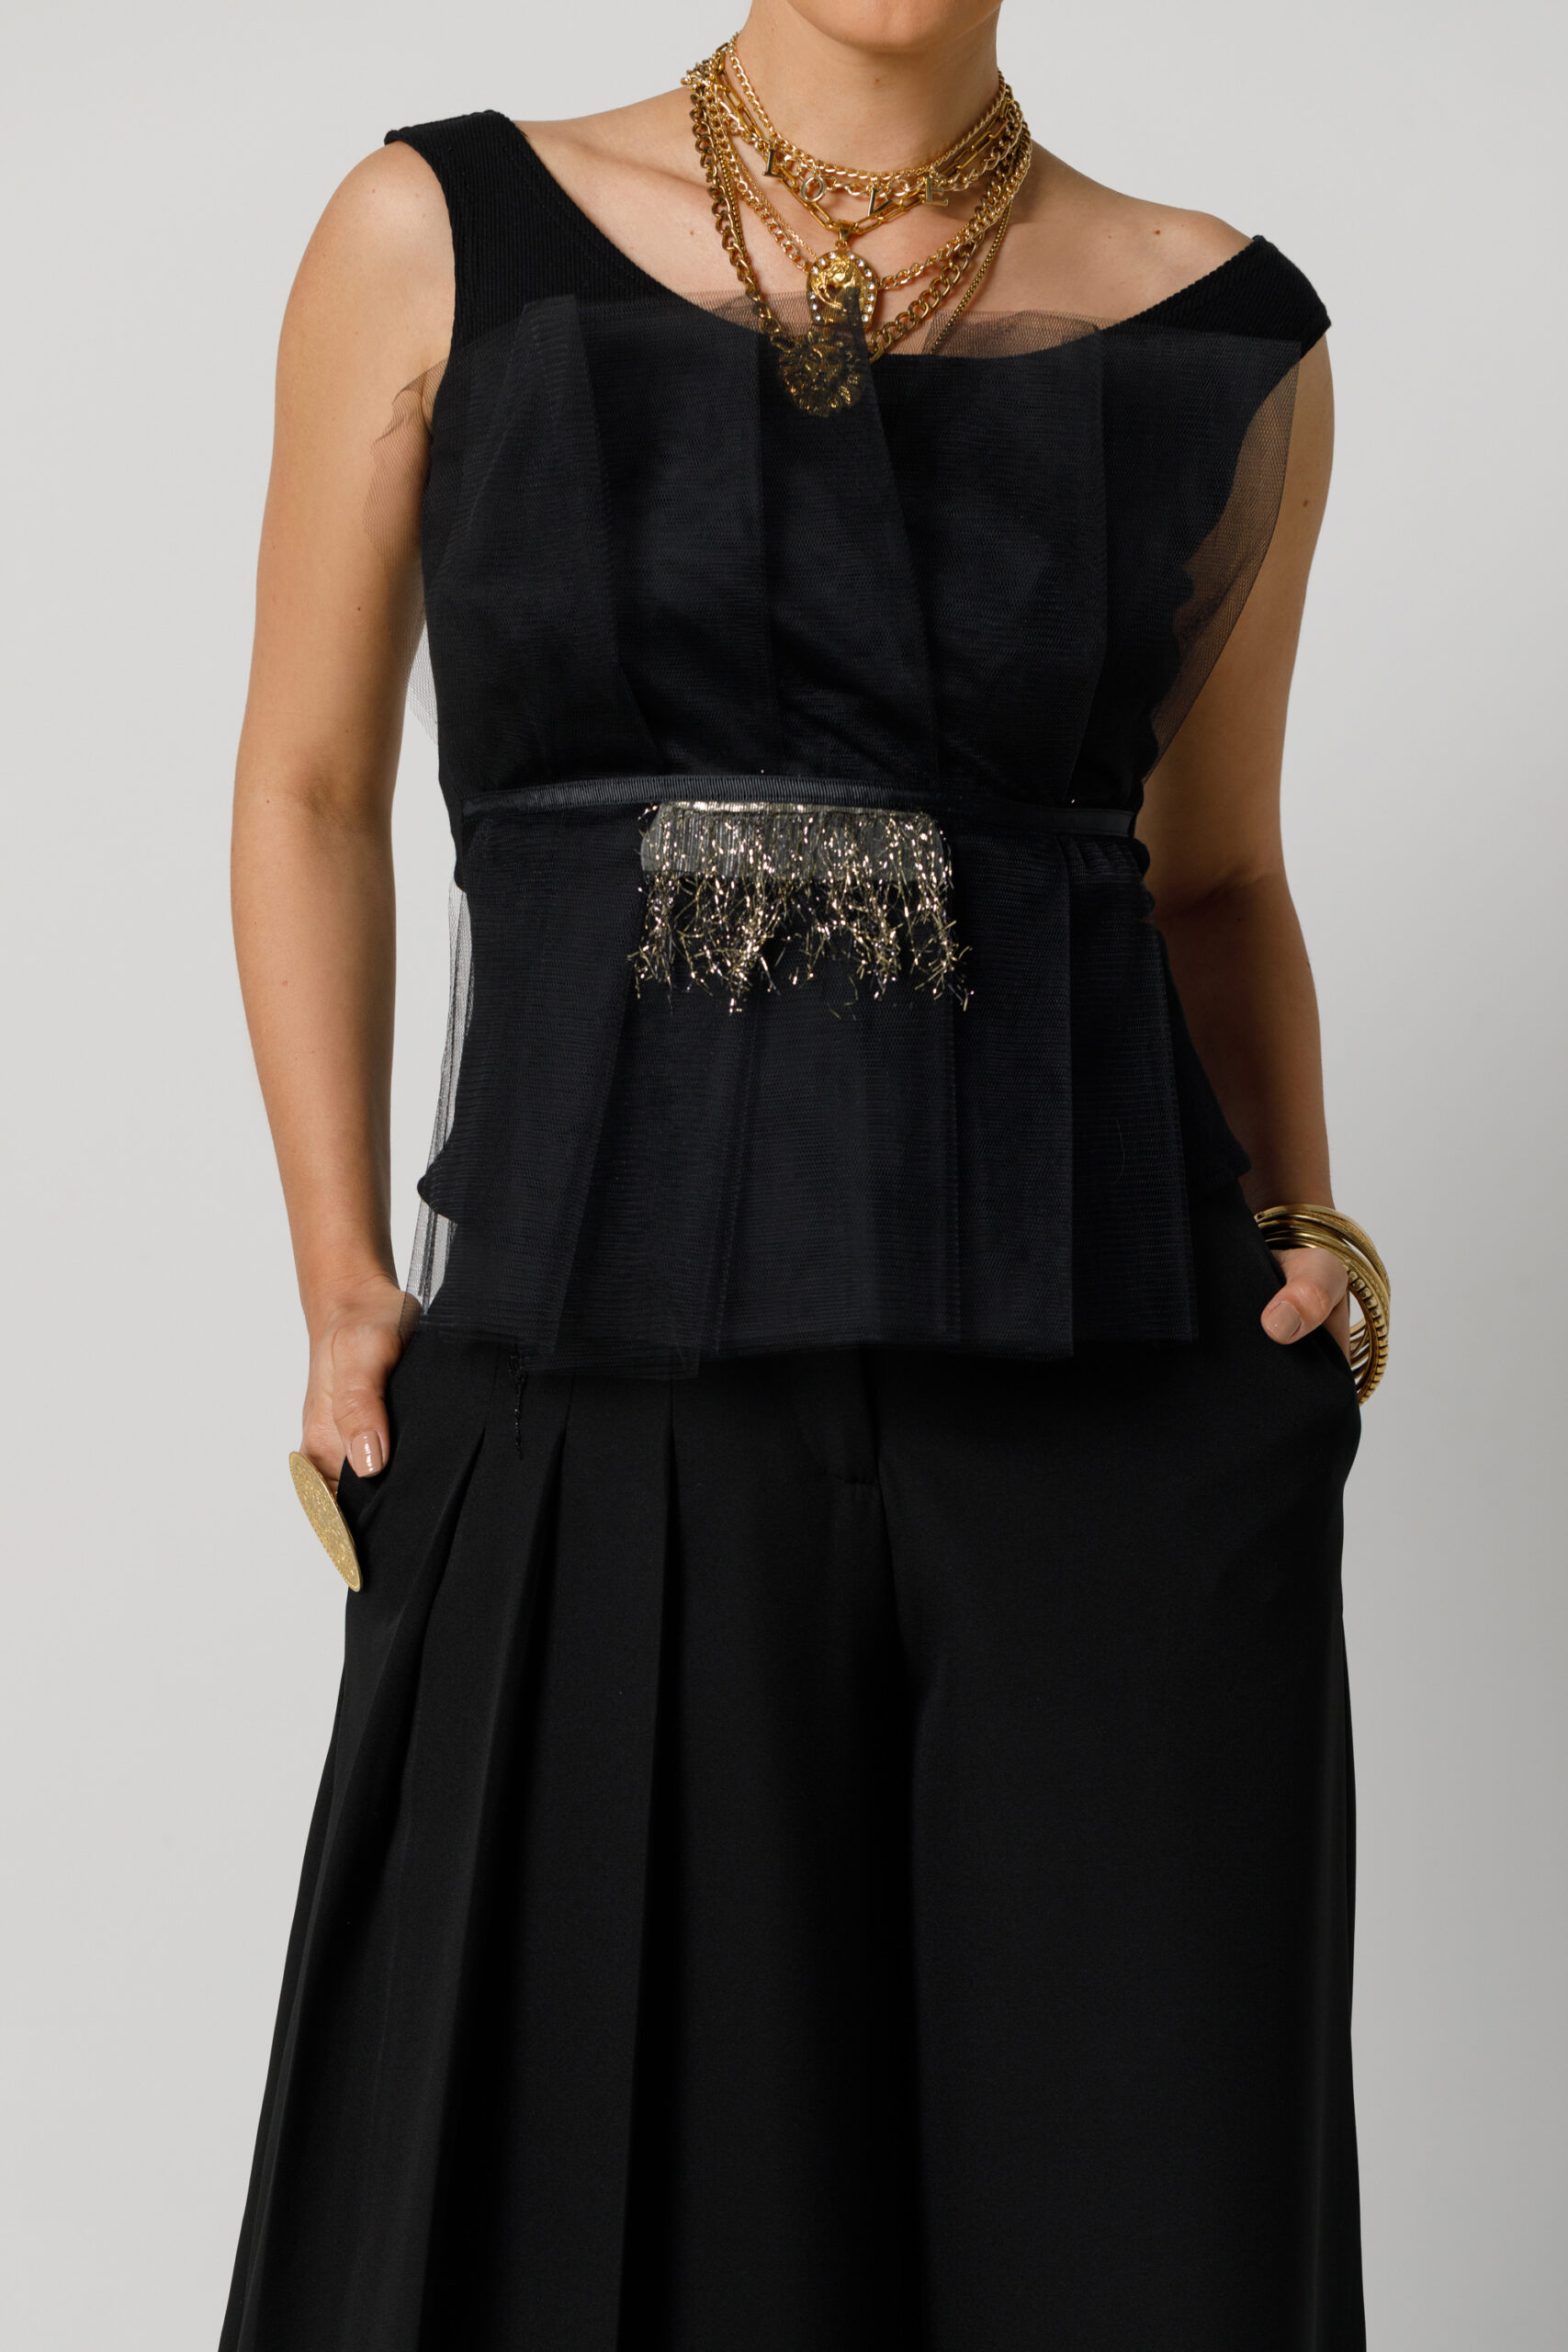 Top ASHA elegant cu tul drapat negru. Materiale naturale, design unicat, cu broderie si aplicatii handmade